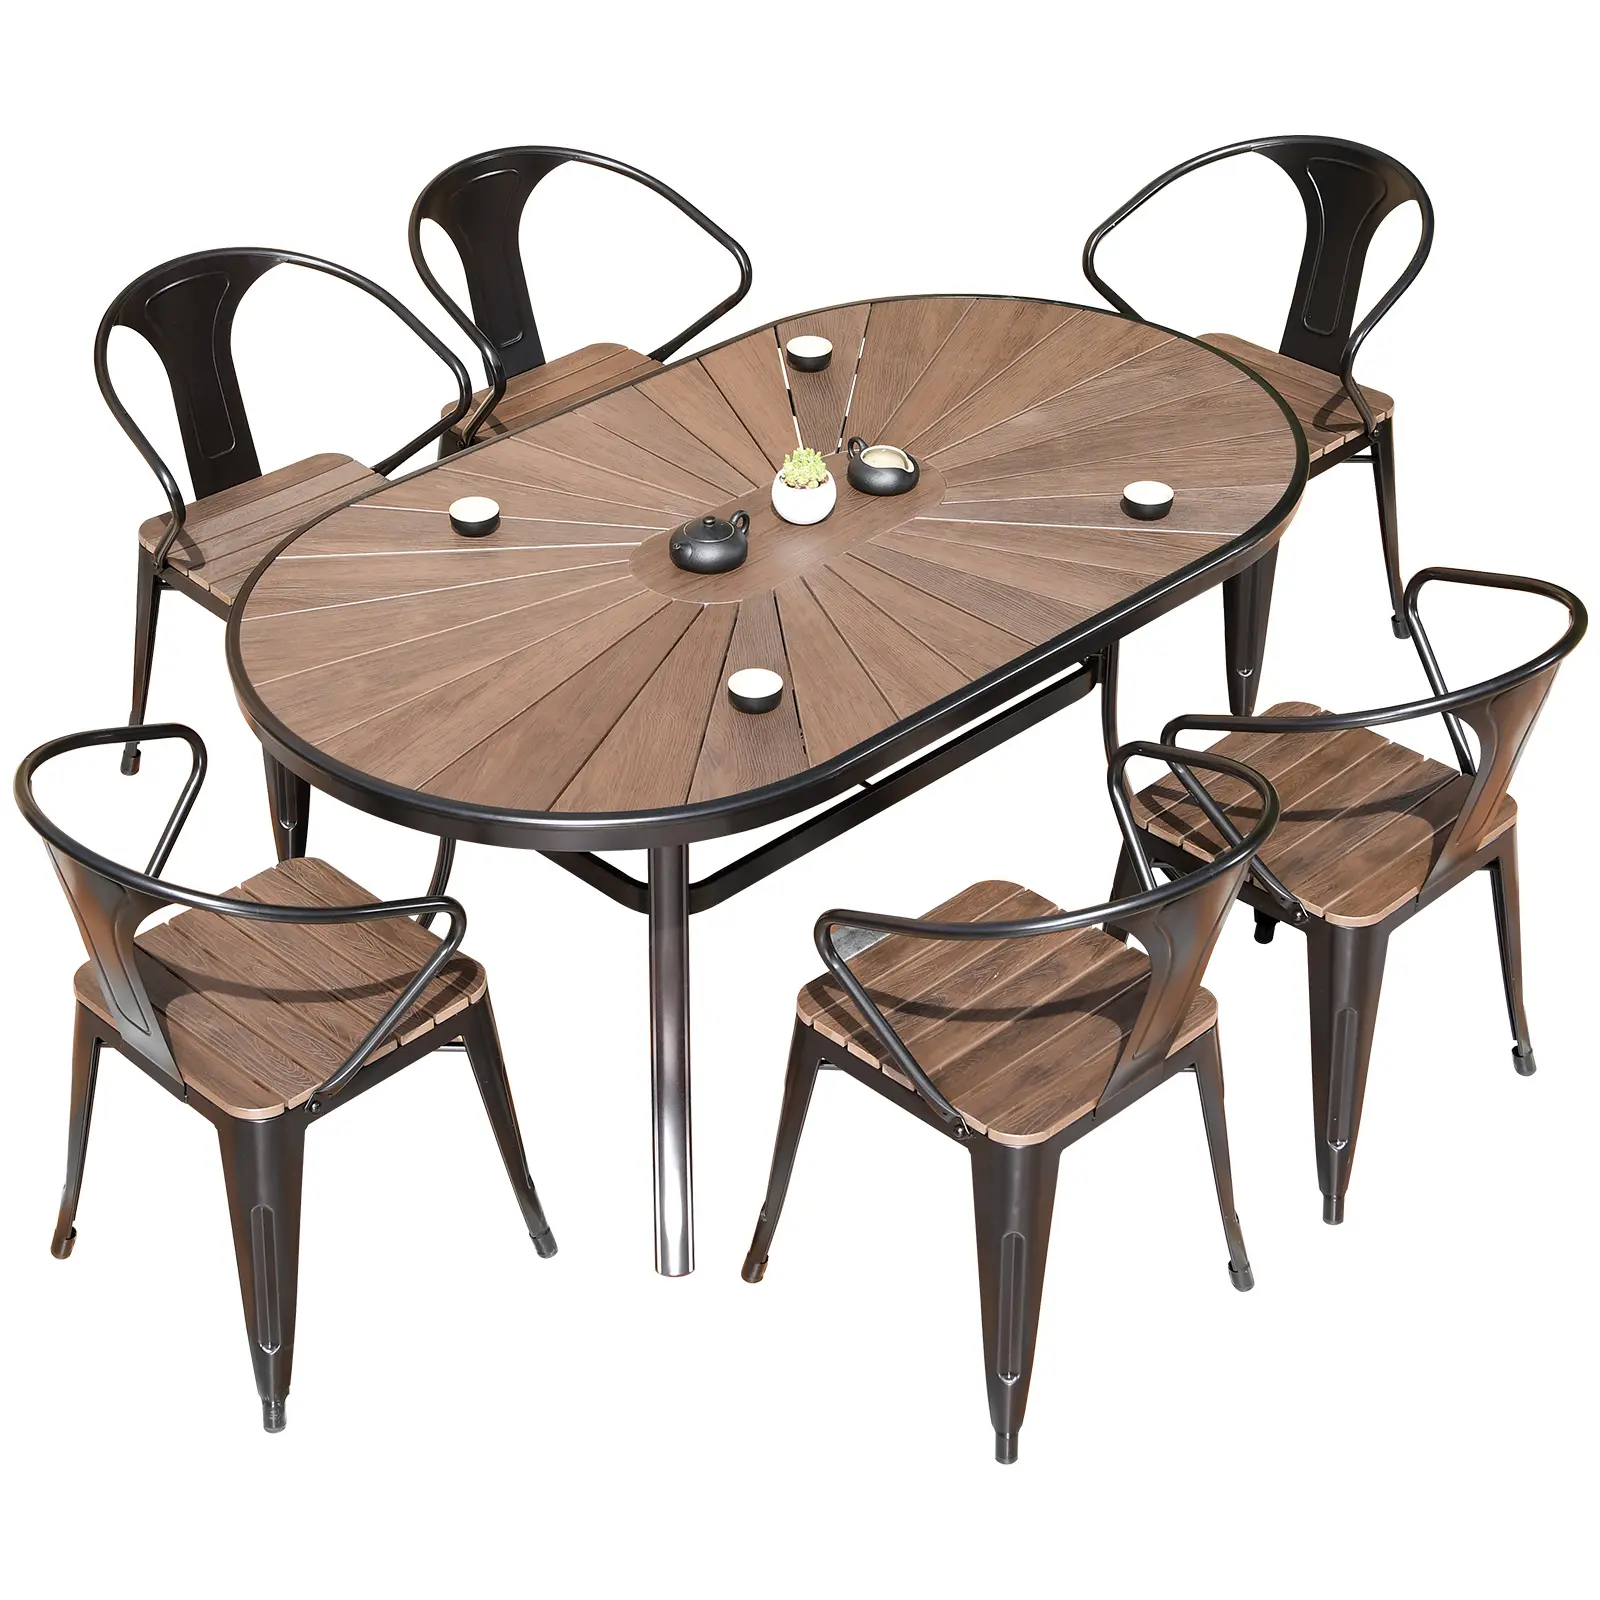 Prix d'usine Salle à manger durable en plastique bois chaise et table ensemble métal fer pour la maison hôtel restaurant ensemble de meubles